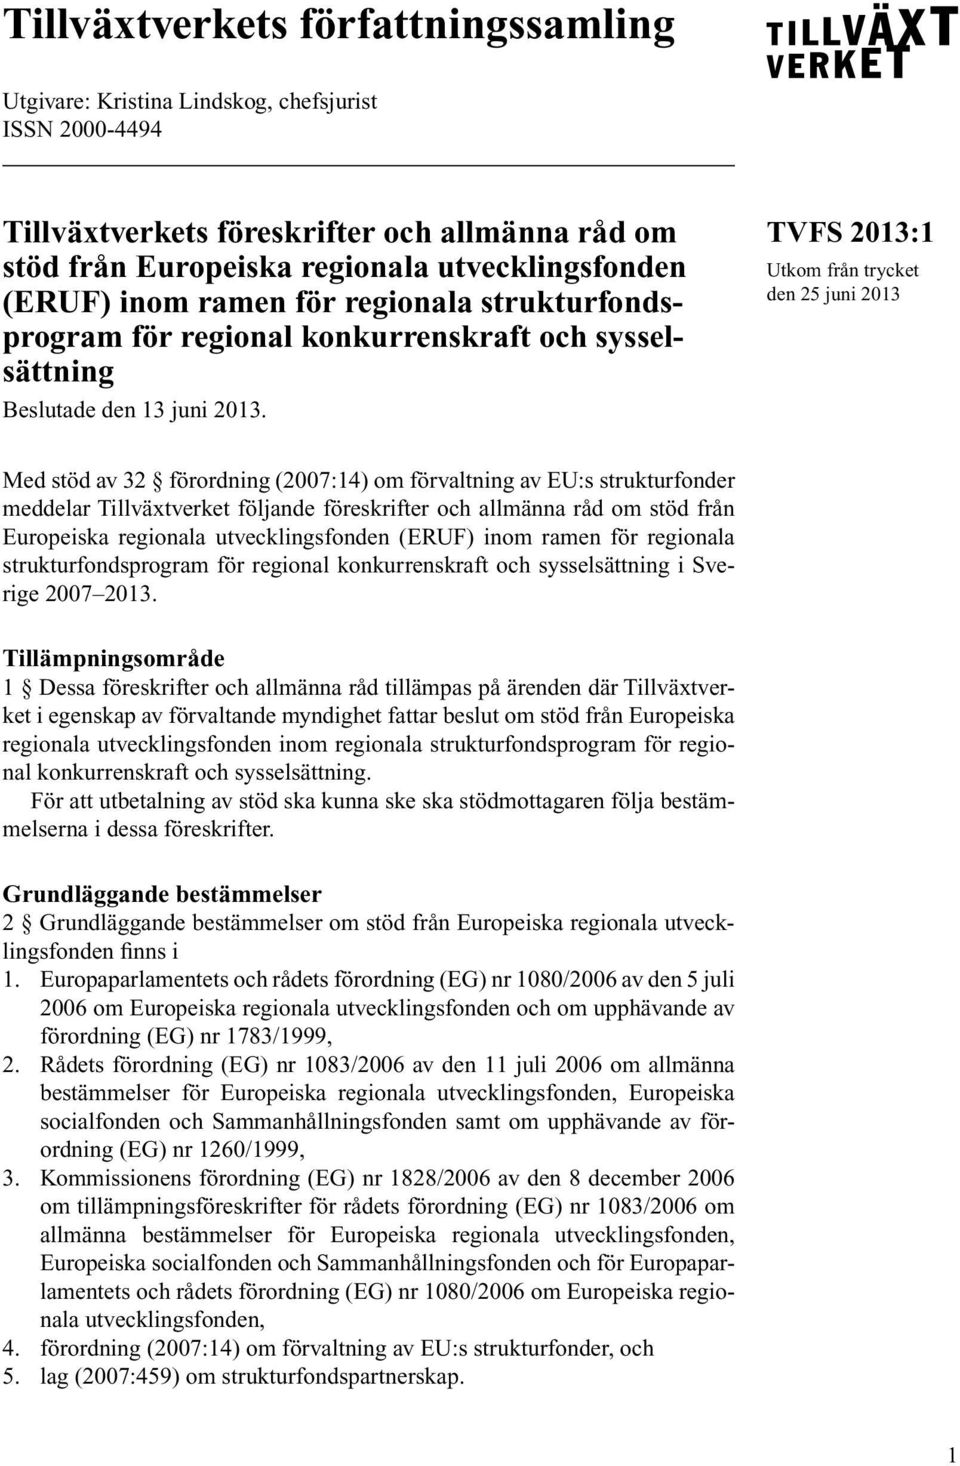 TVFS 2013:1 Utkom från trycket den 25 juni 2013 Med stöd av 32 förordning (2007:14) om förvaltning av EU:s strukturfonder meddelar Tillväxtverket följande föreskrifter och allmänna råd om stöd från